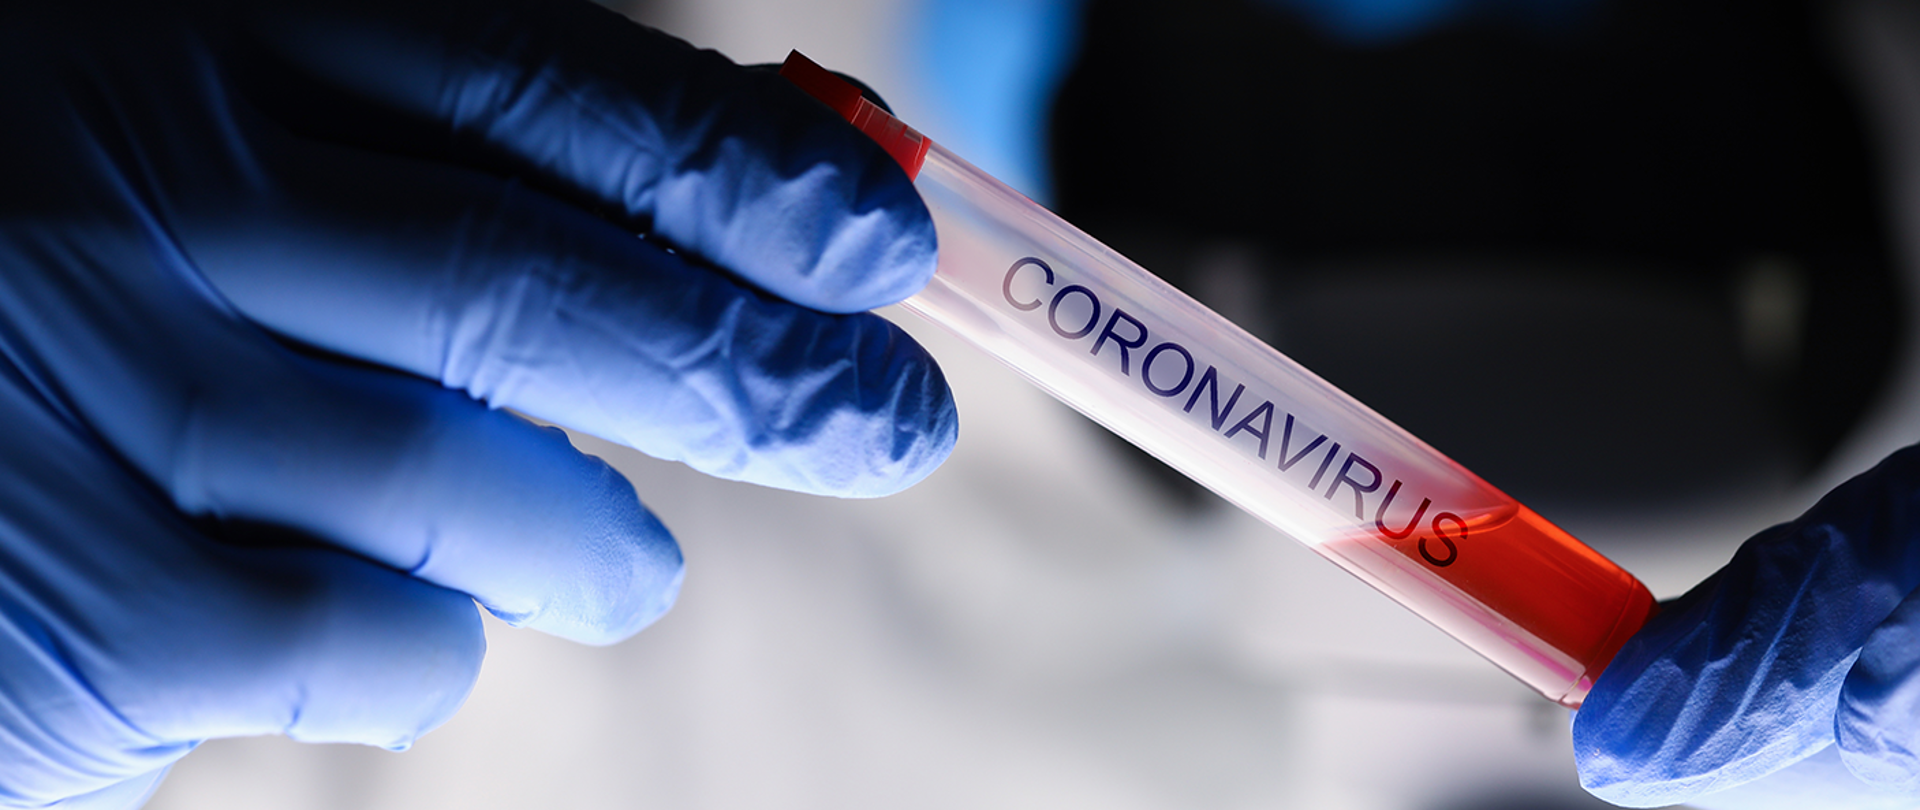 Ampułka z czerwoną substancją, podpisana "coronavirus", trzymana w rękach w niebieskich lateksowych rękawiczkach. 